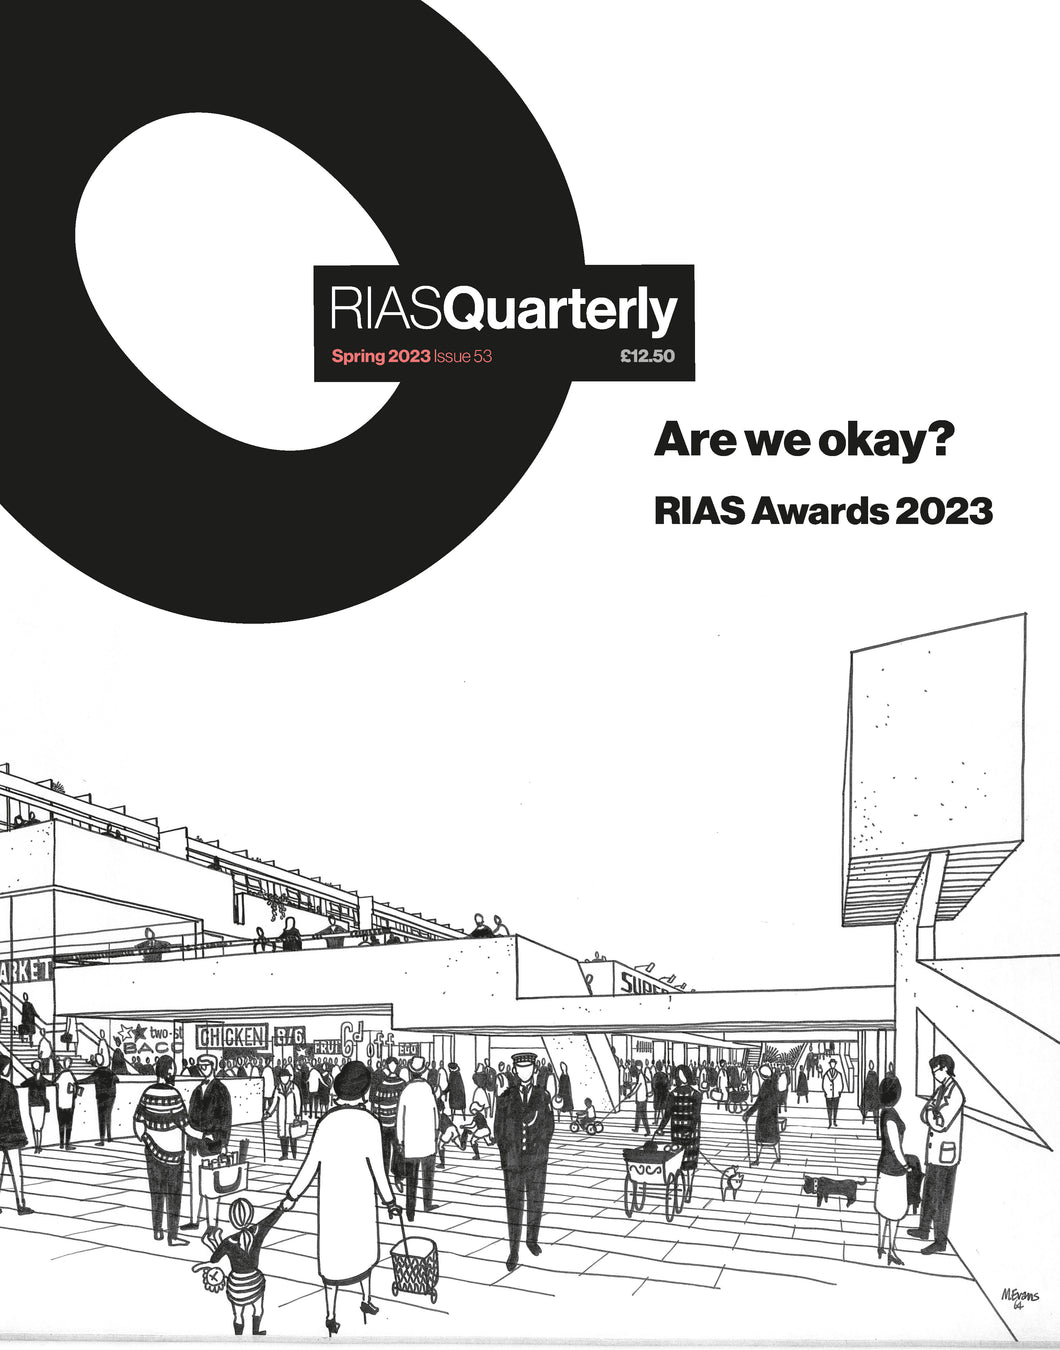 RIAS Quarterly Magazine - Issue 53